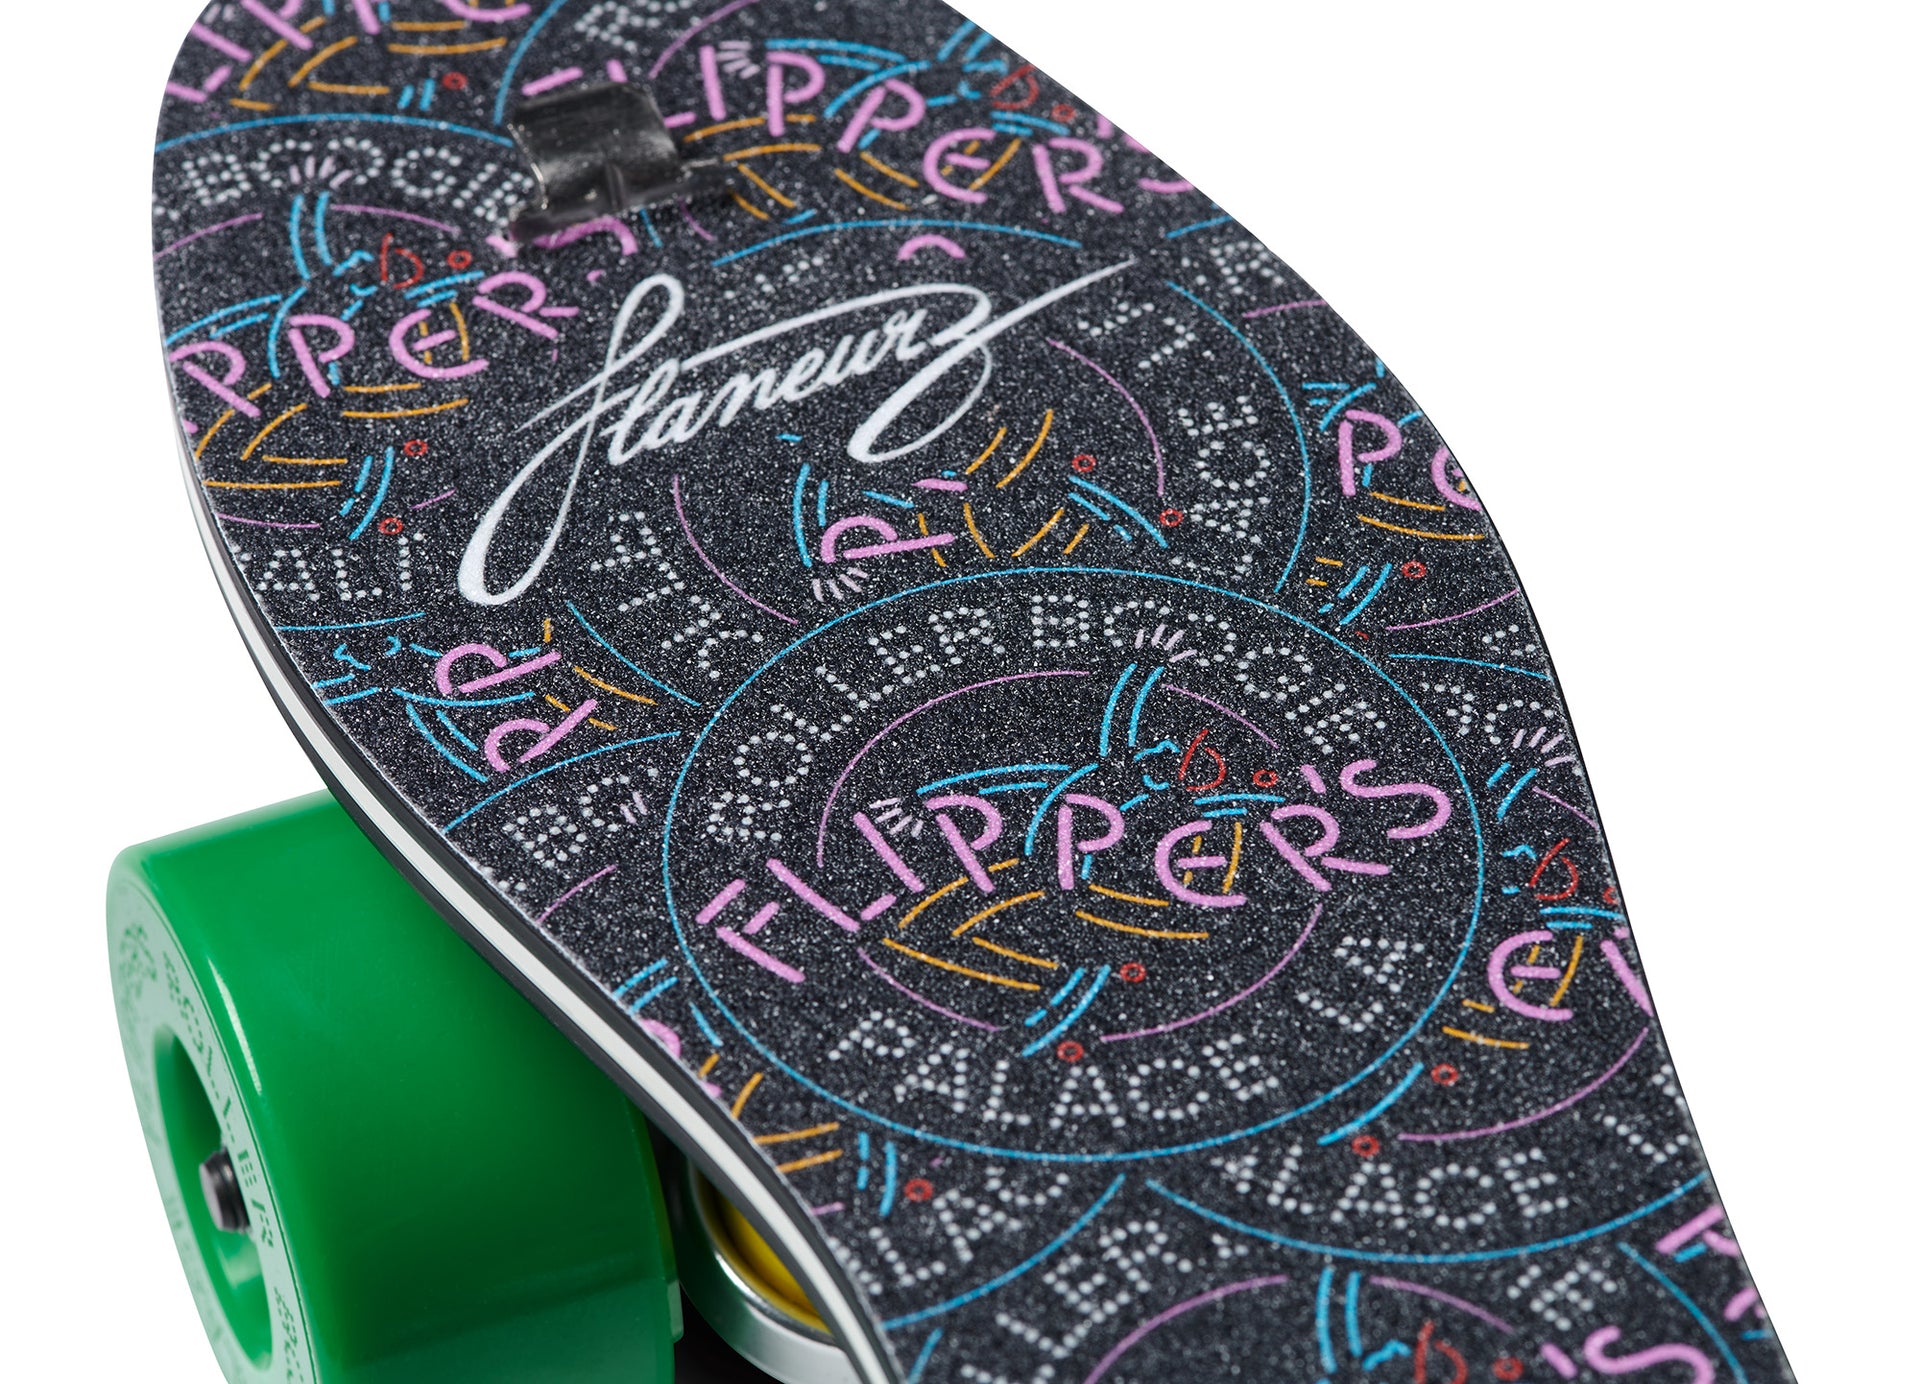 Flipper's Chronic Skate